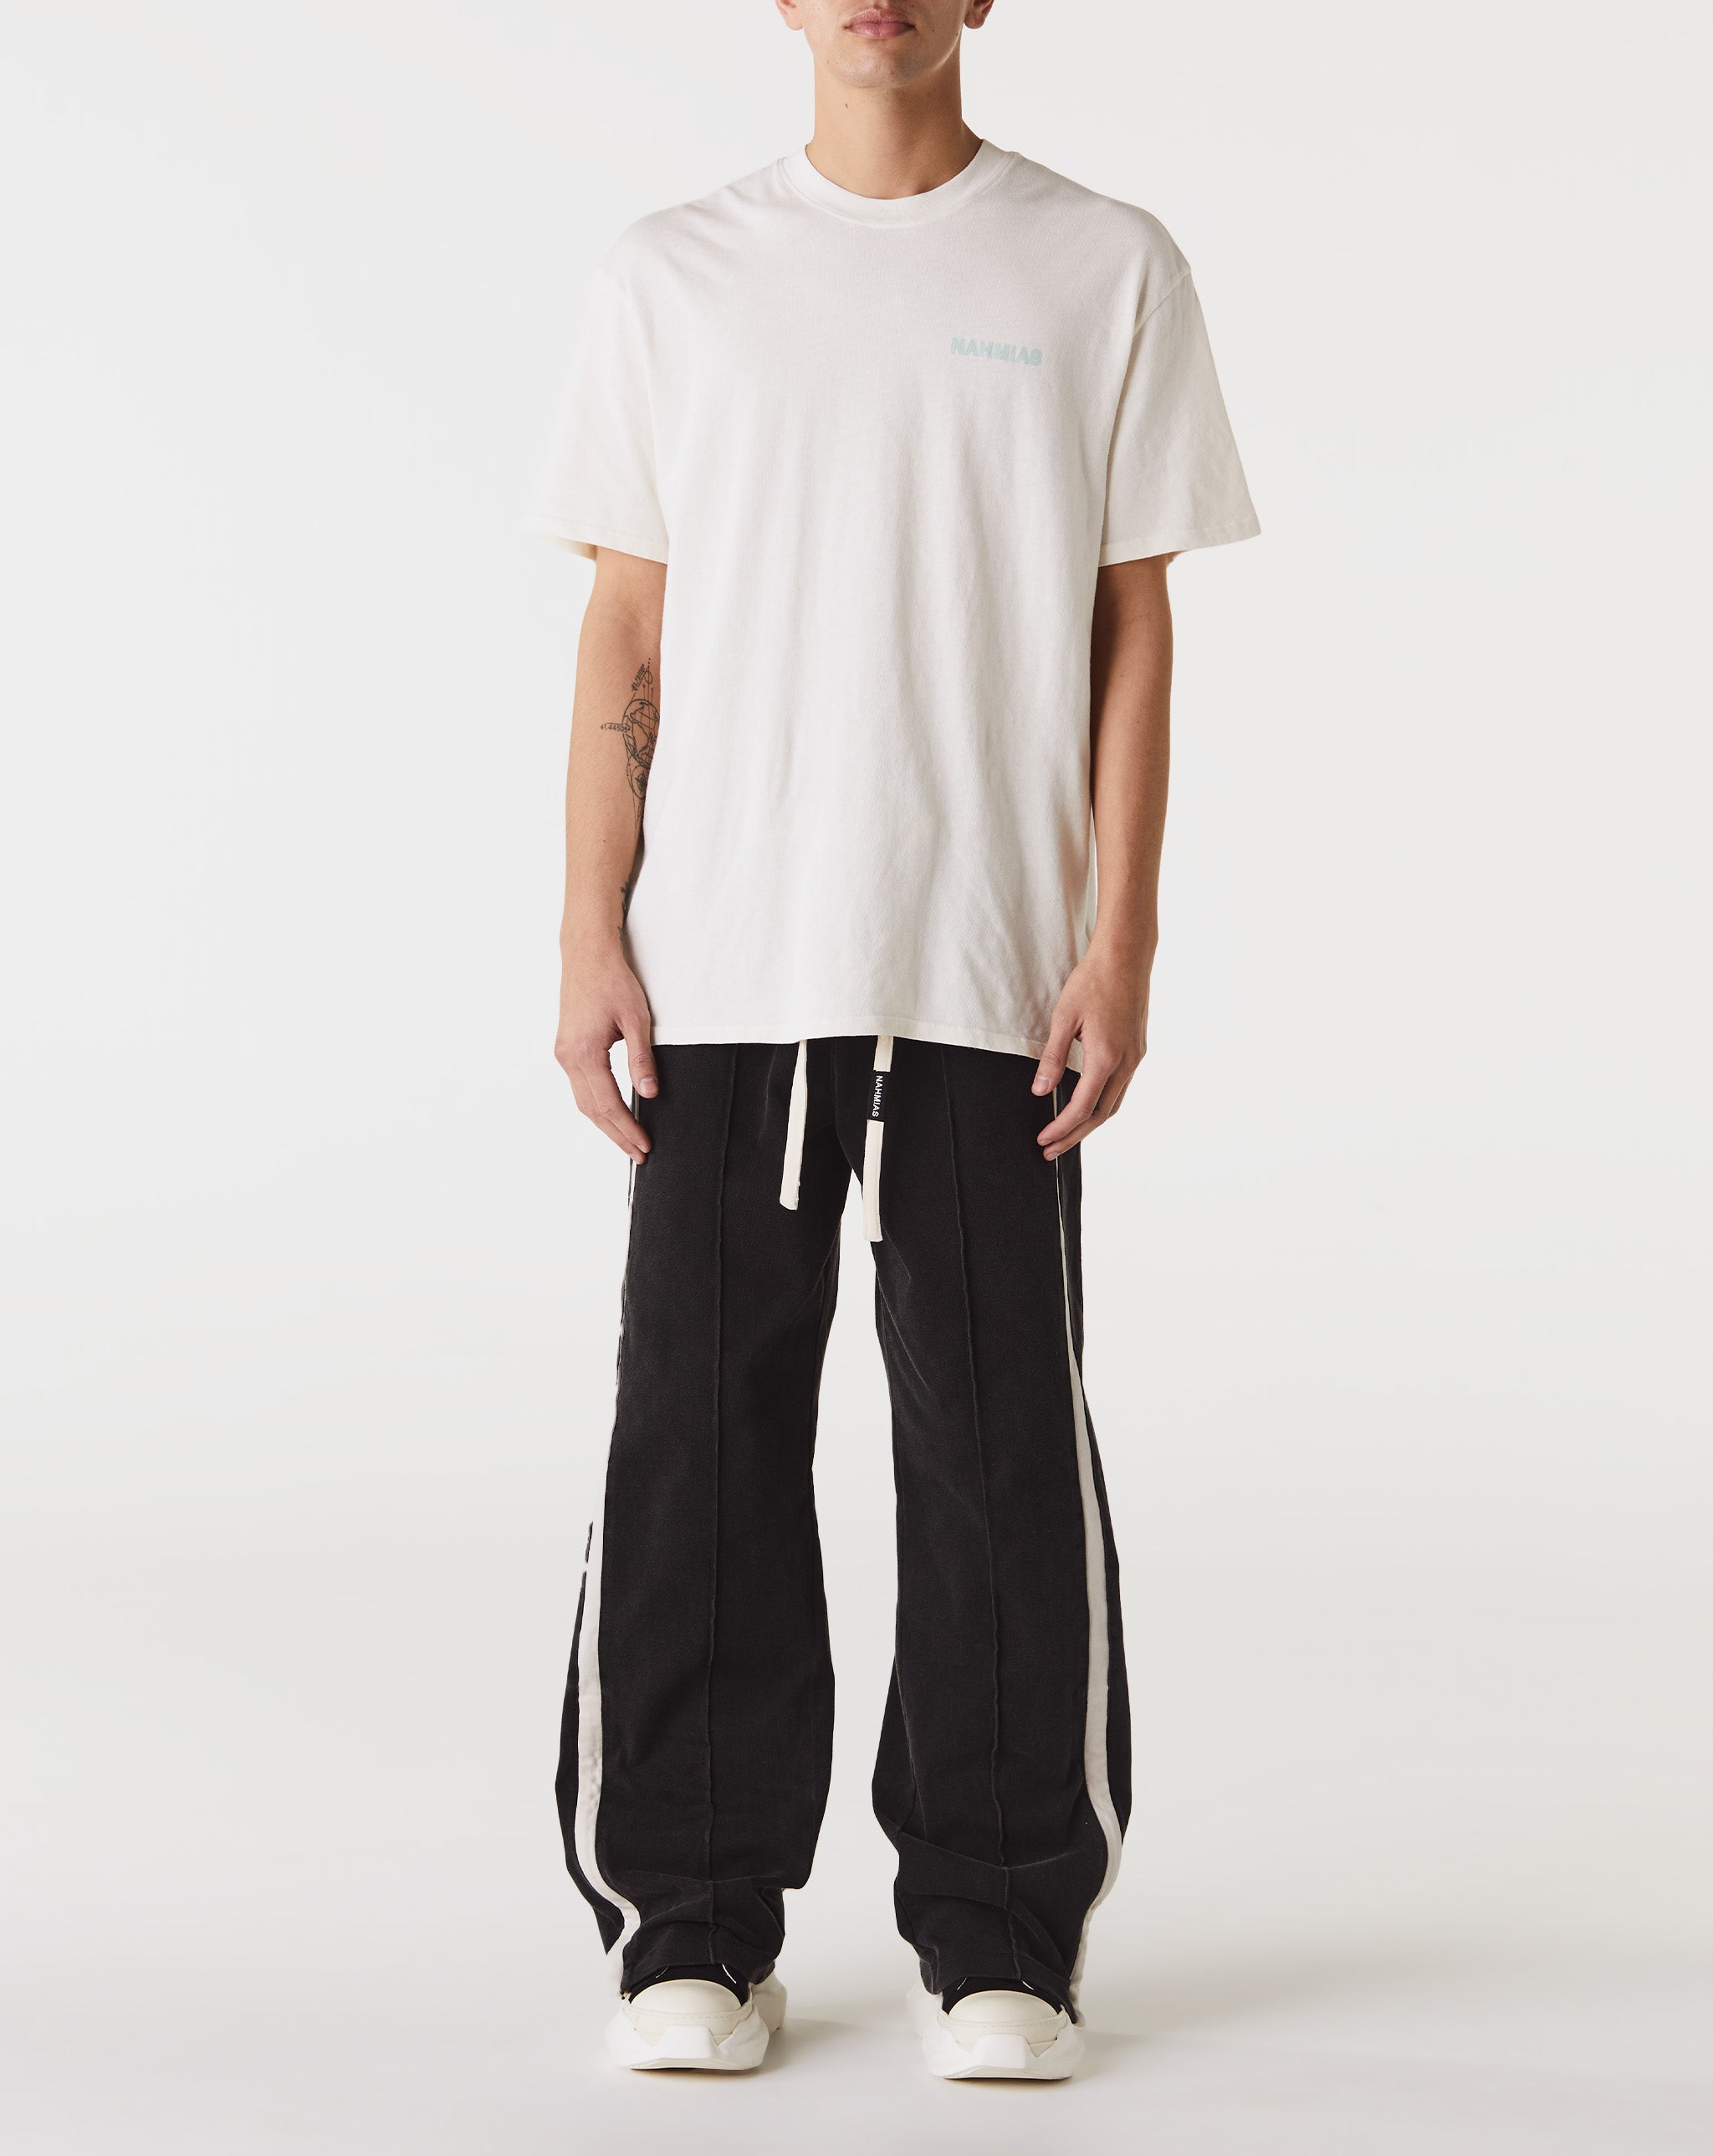 Nahmias Helly Hansen Nord Graphic HH Short Sleeve T-Shirt  - Cheap Urlfreeze Jordan outlet